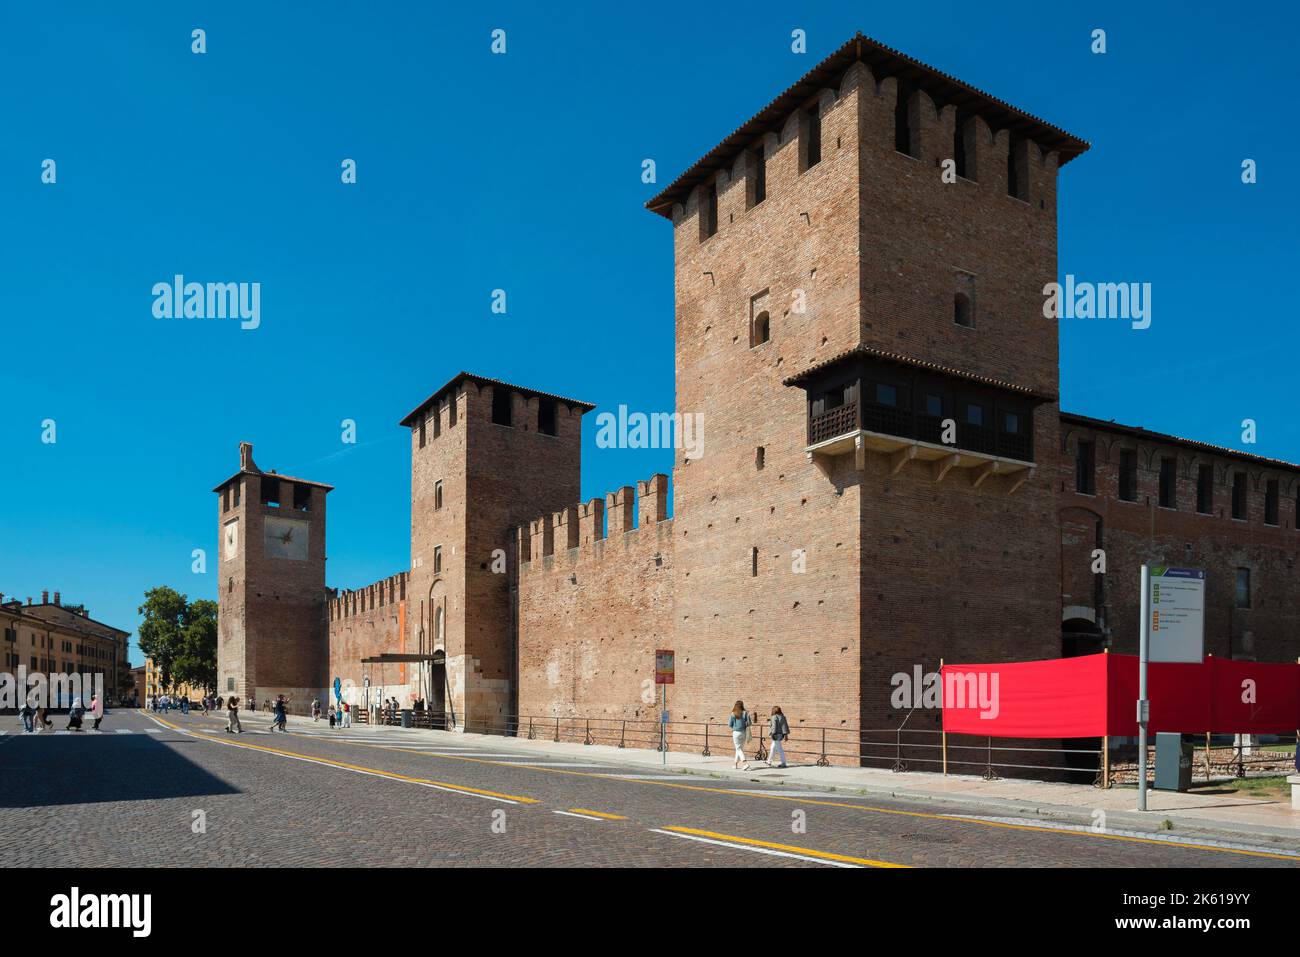 Castelvecchio Verona, Blick im Sommer auf die Südwand und Eingang der mittelalterlichen Festung Castelvecchio im historischen Zentrum von Verona, Italien Stockfoto